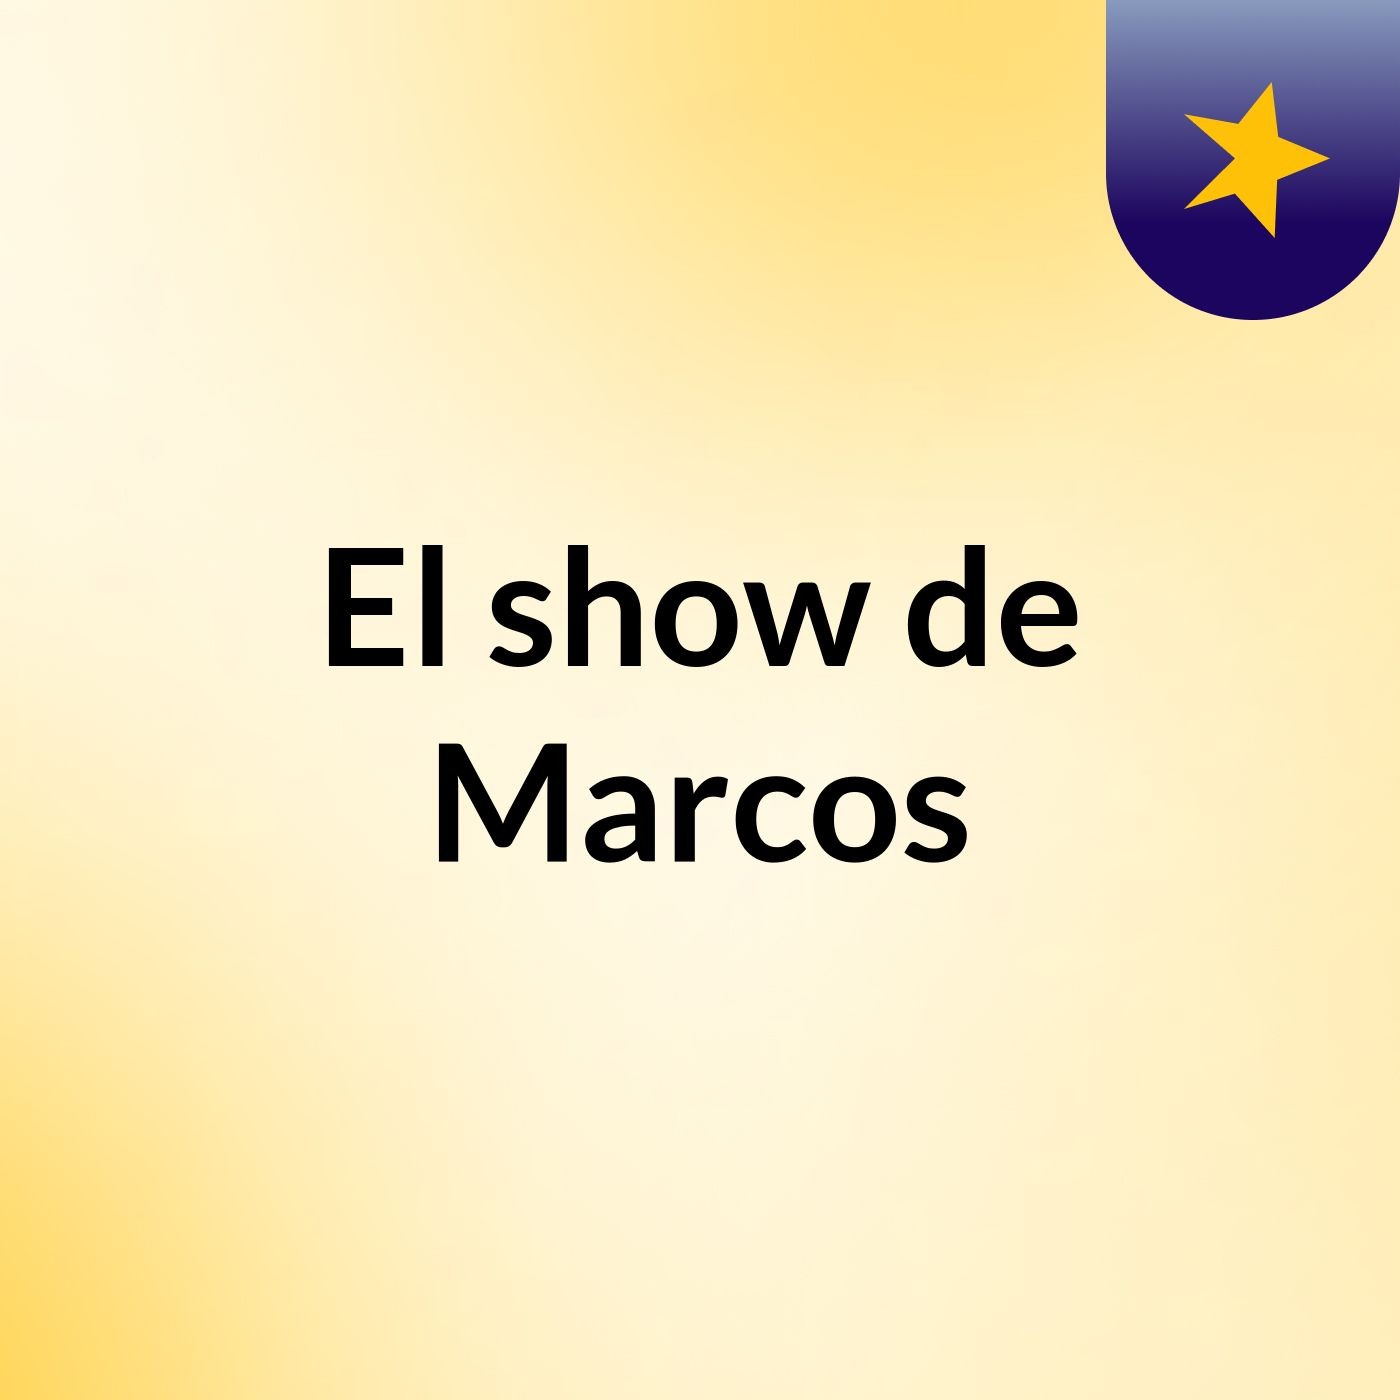 El show de Marcos